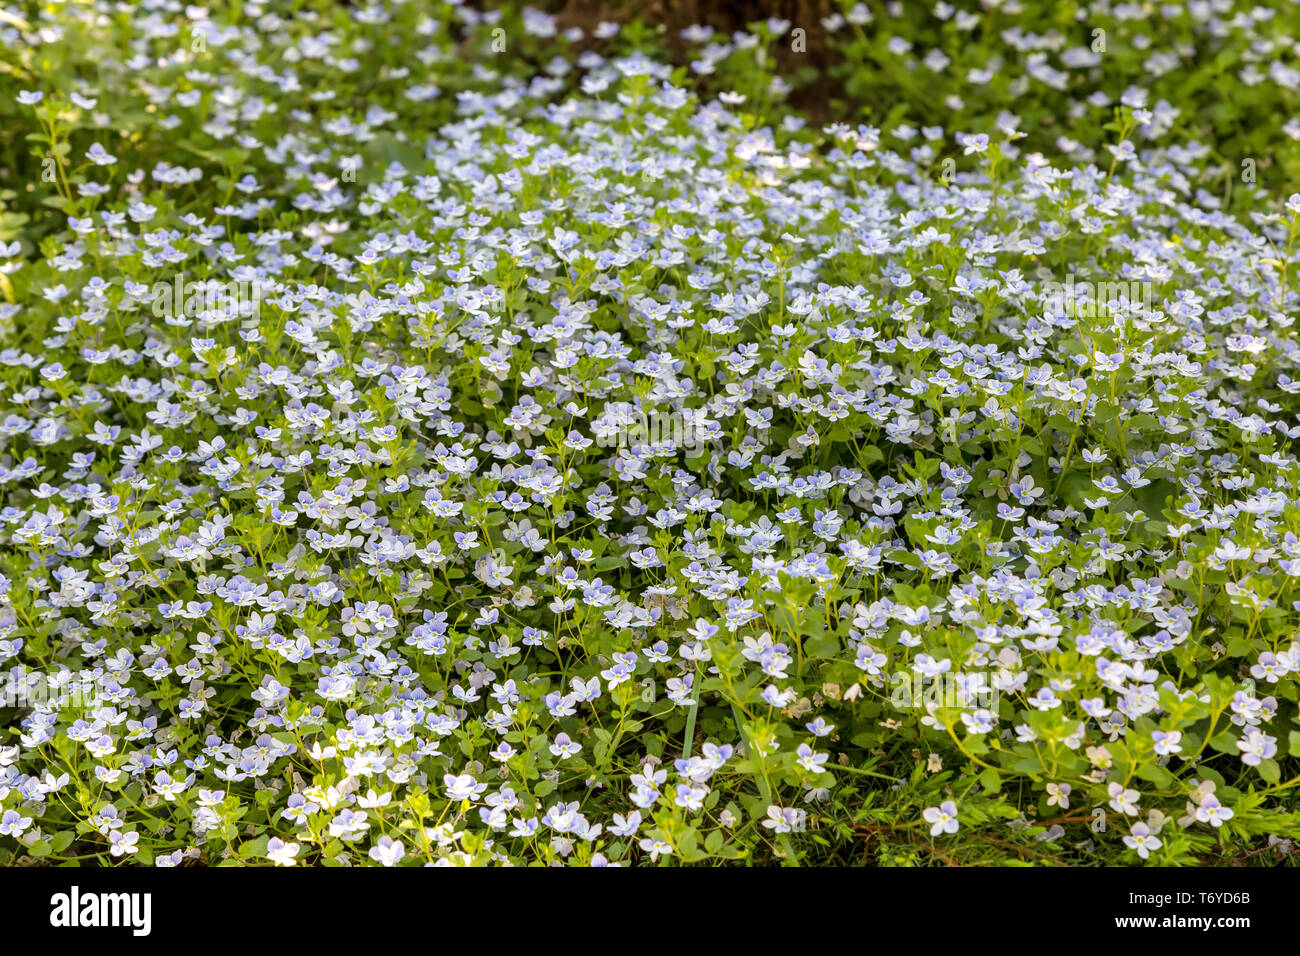 Full frame background of small light blue flowers Stock Photo